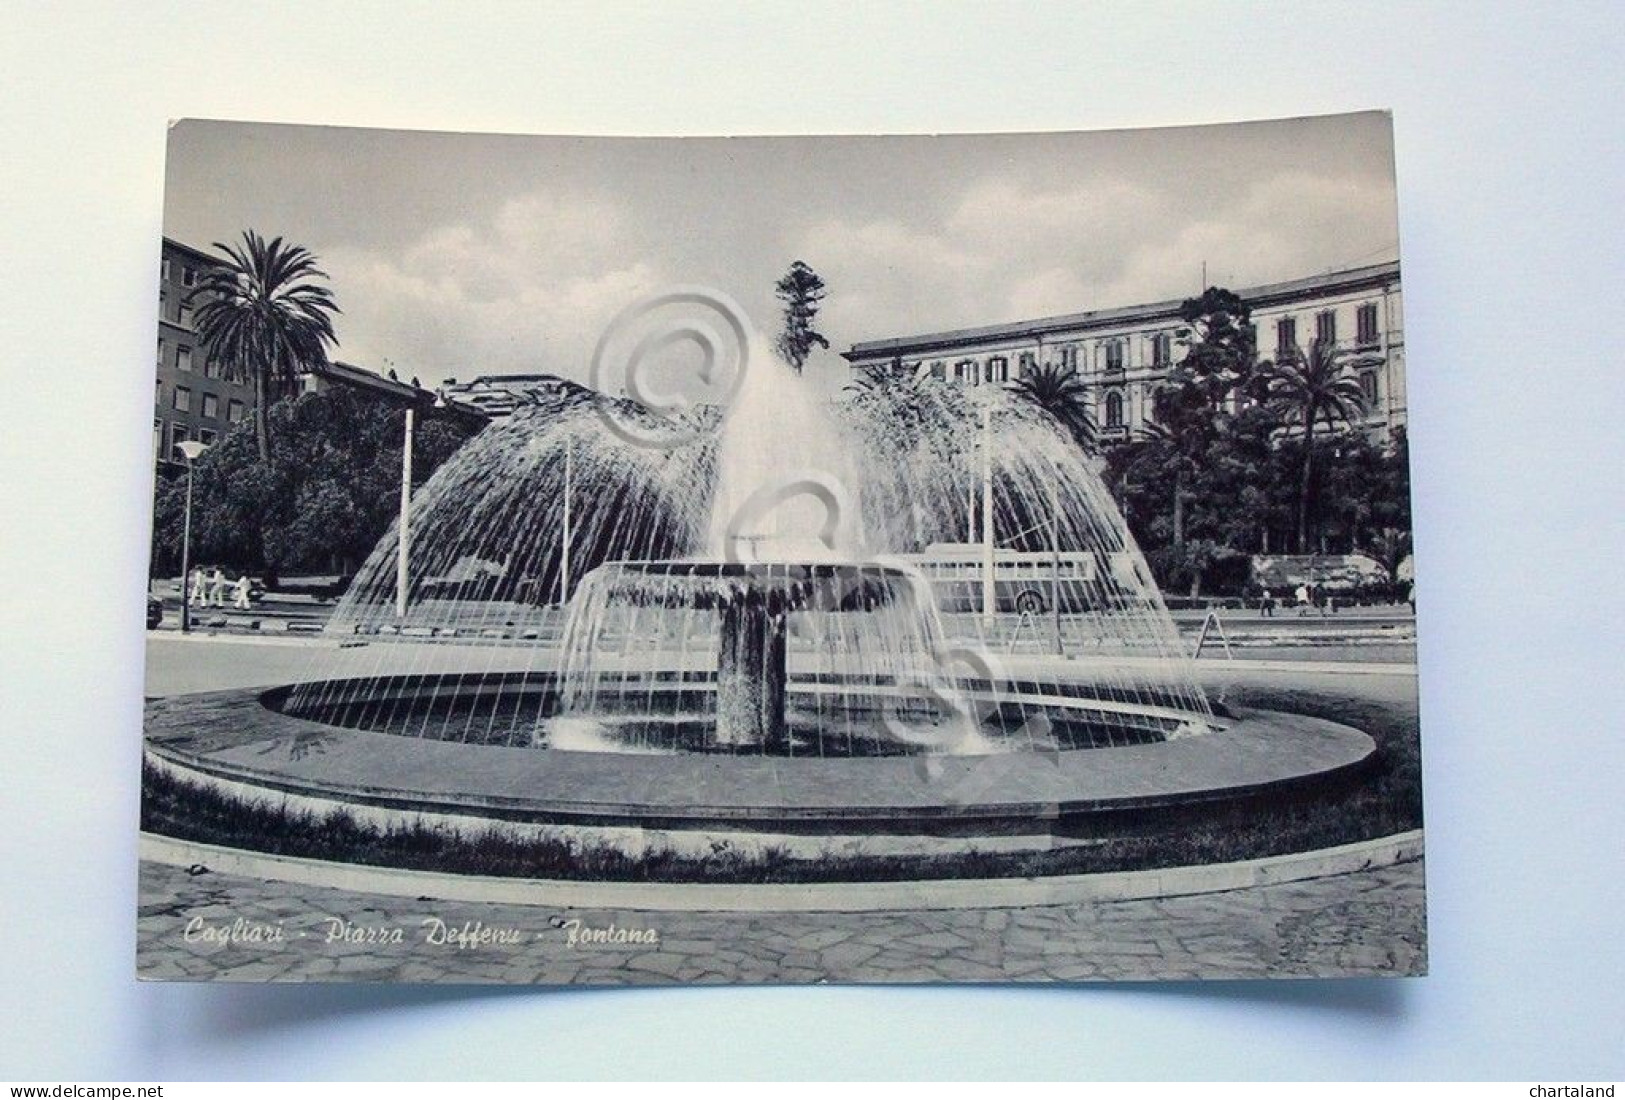 Cartolina Fontana In Piazza Deffenu - Cagliari 1960 Ca. - Cagliari